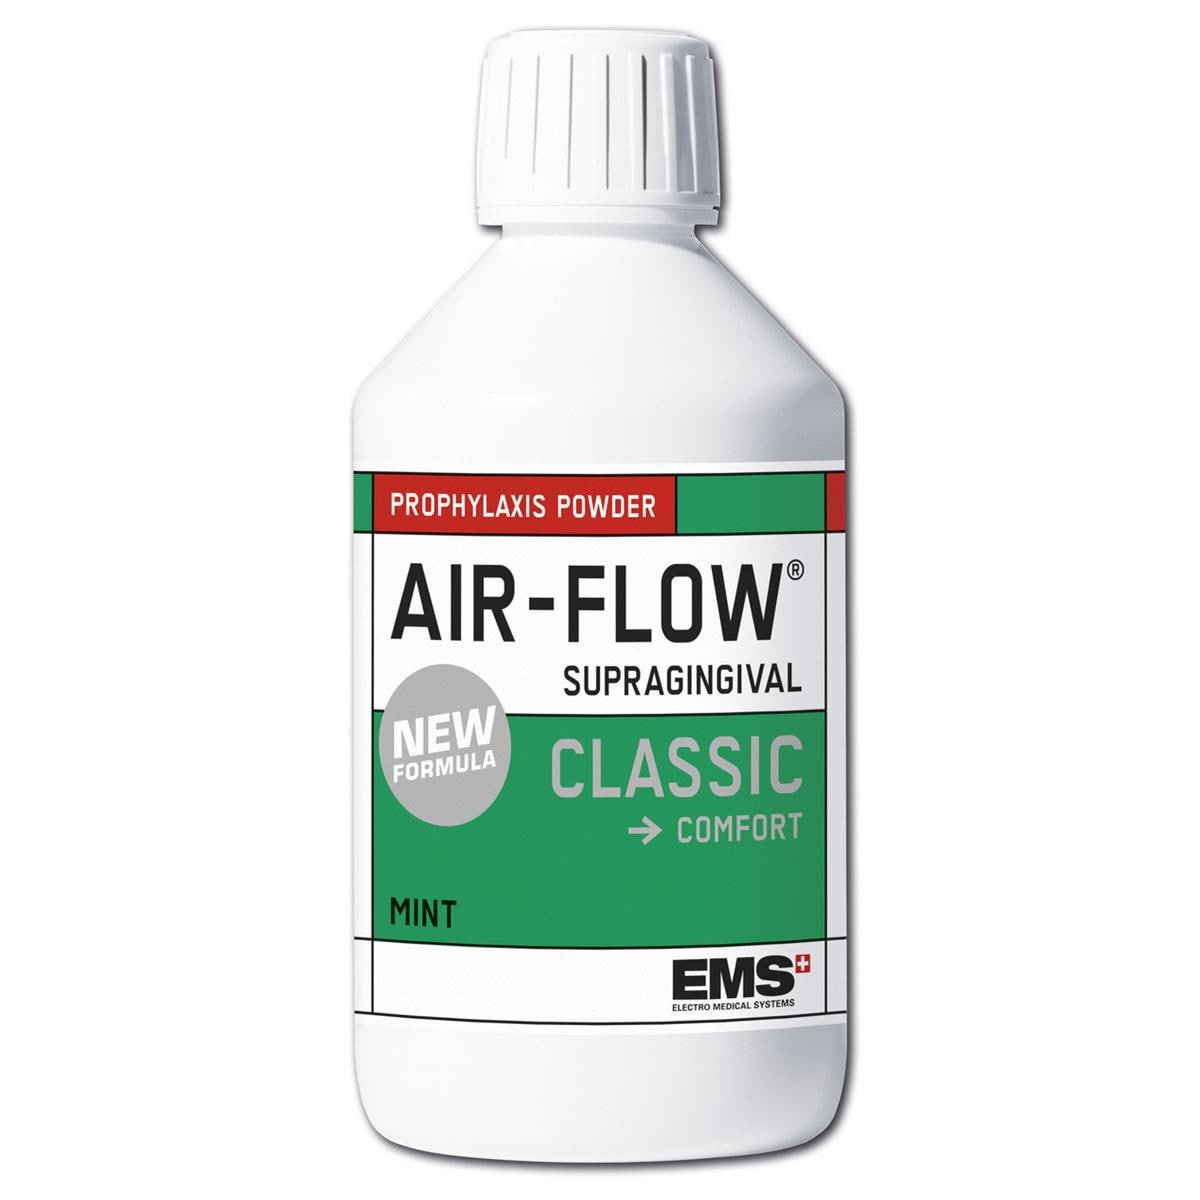 AIR-FLOW poudre CLASSIC - flacons - menthe, 4x 300 g